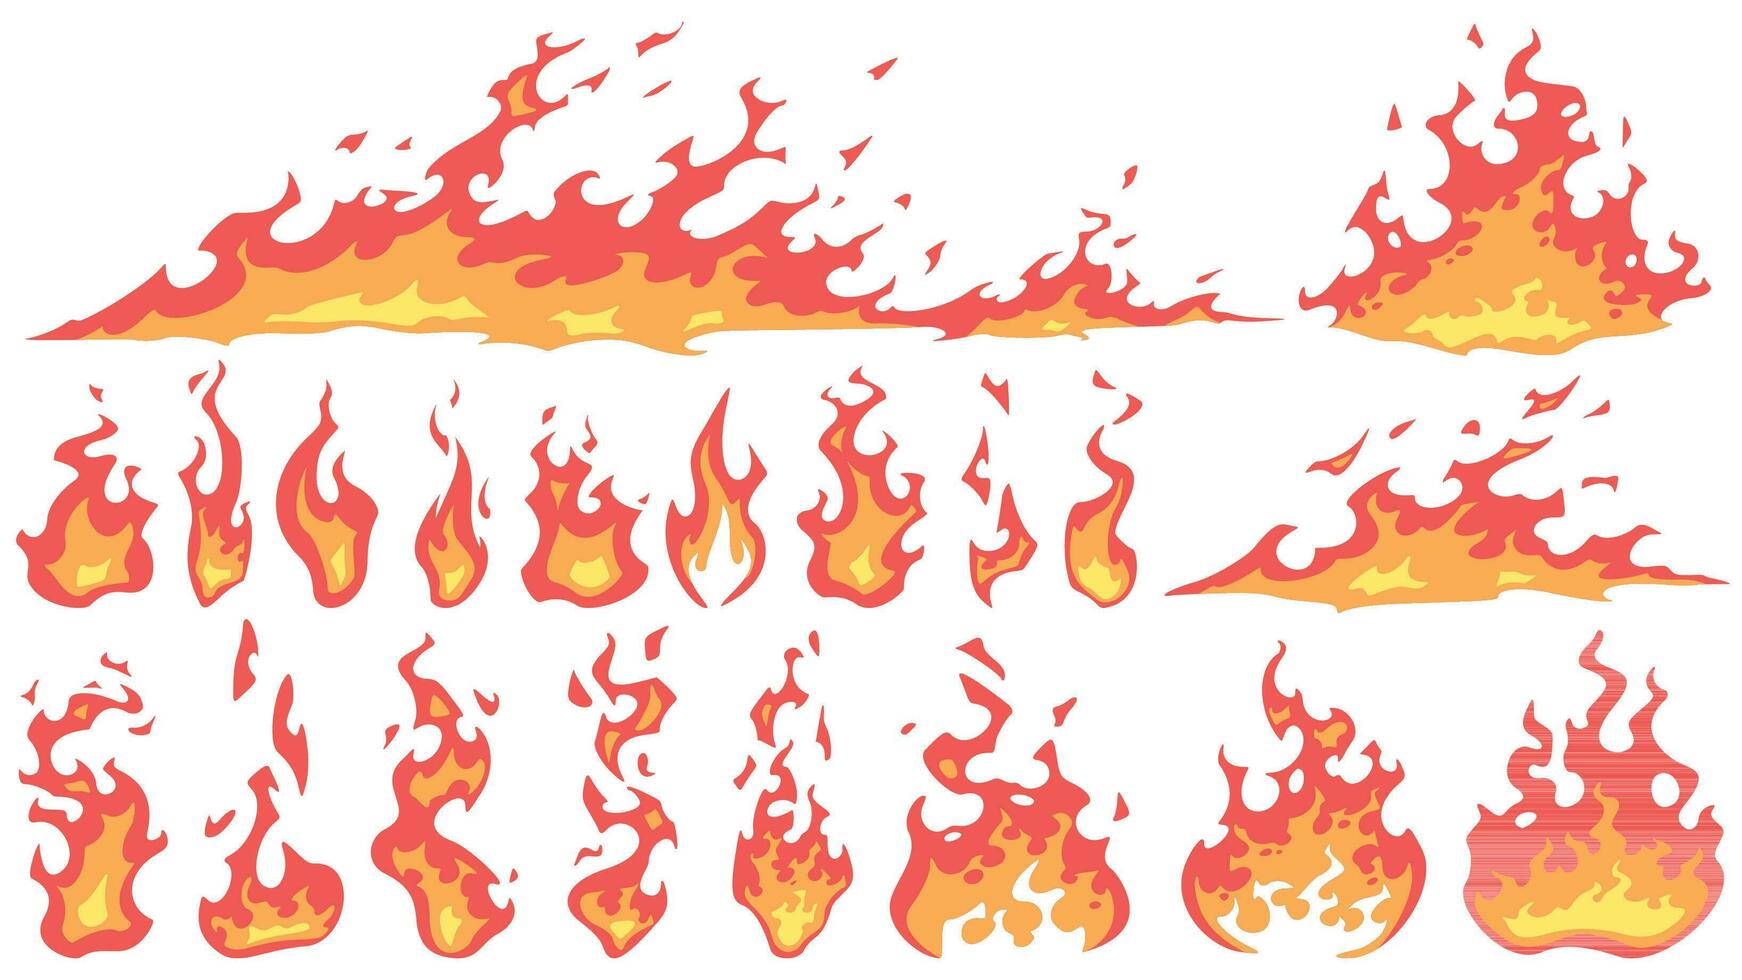 dibujos animados fuego llamas bola de fuego fuego, rojo caliente fuego y hoguera ardiente siluetas vector colocar. ardiente efecto, peligroso natural fenómeno. flameante fuego fatuo aislado en blanco antecedentes